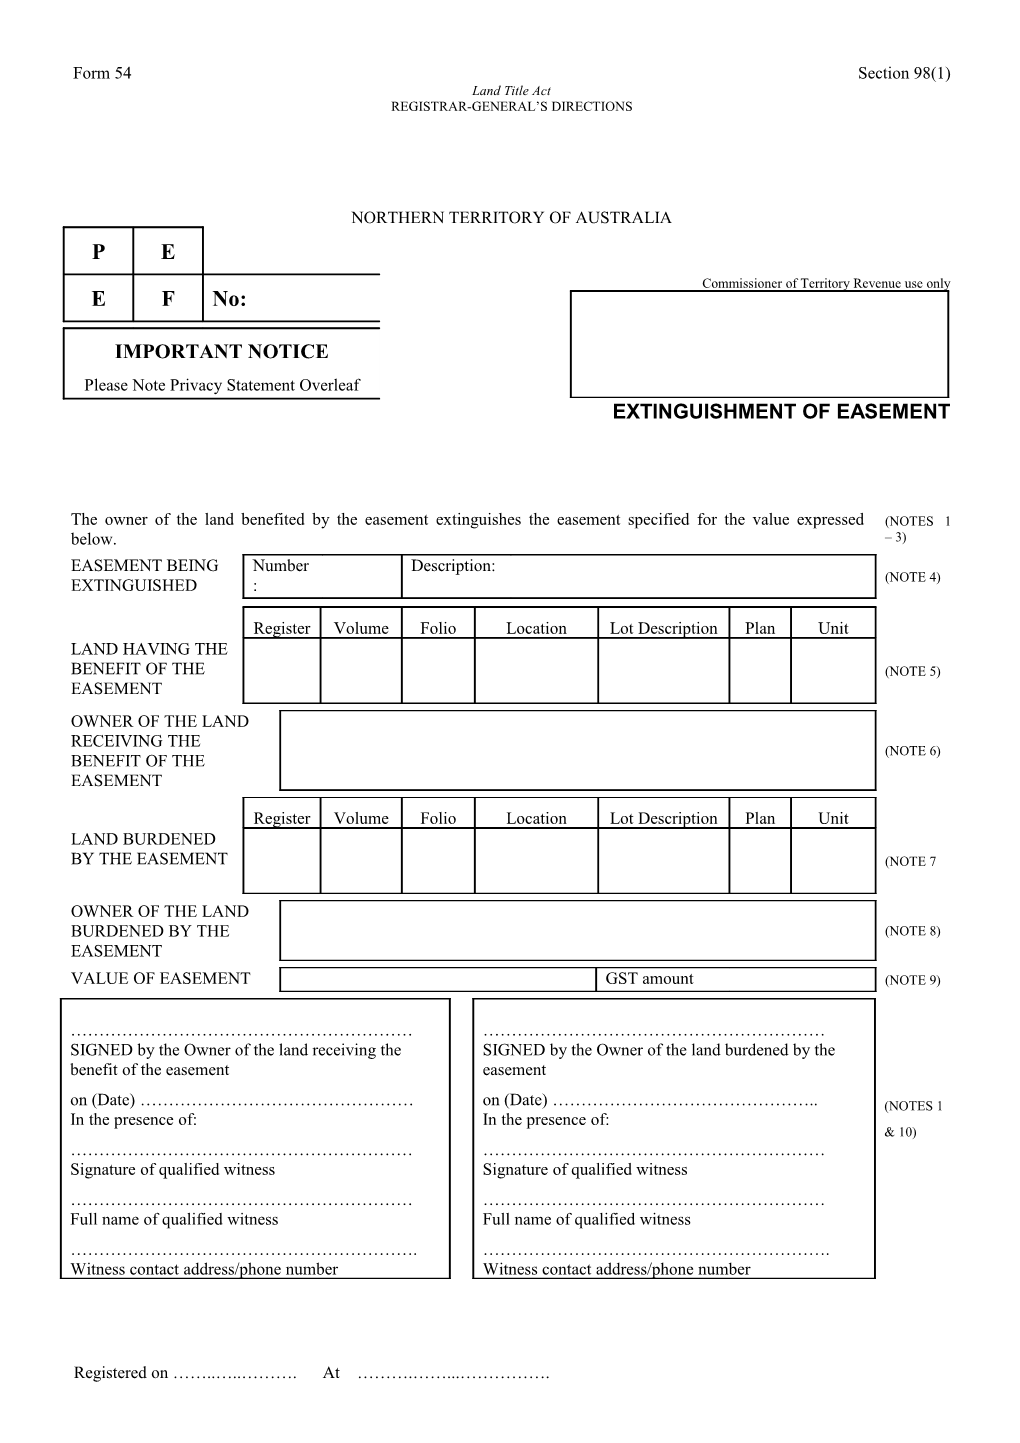 Form No. 54 - Extinguishment of Easement